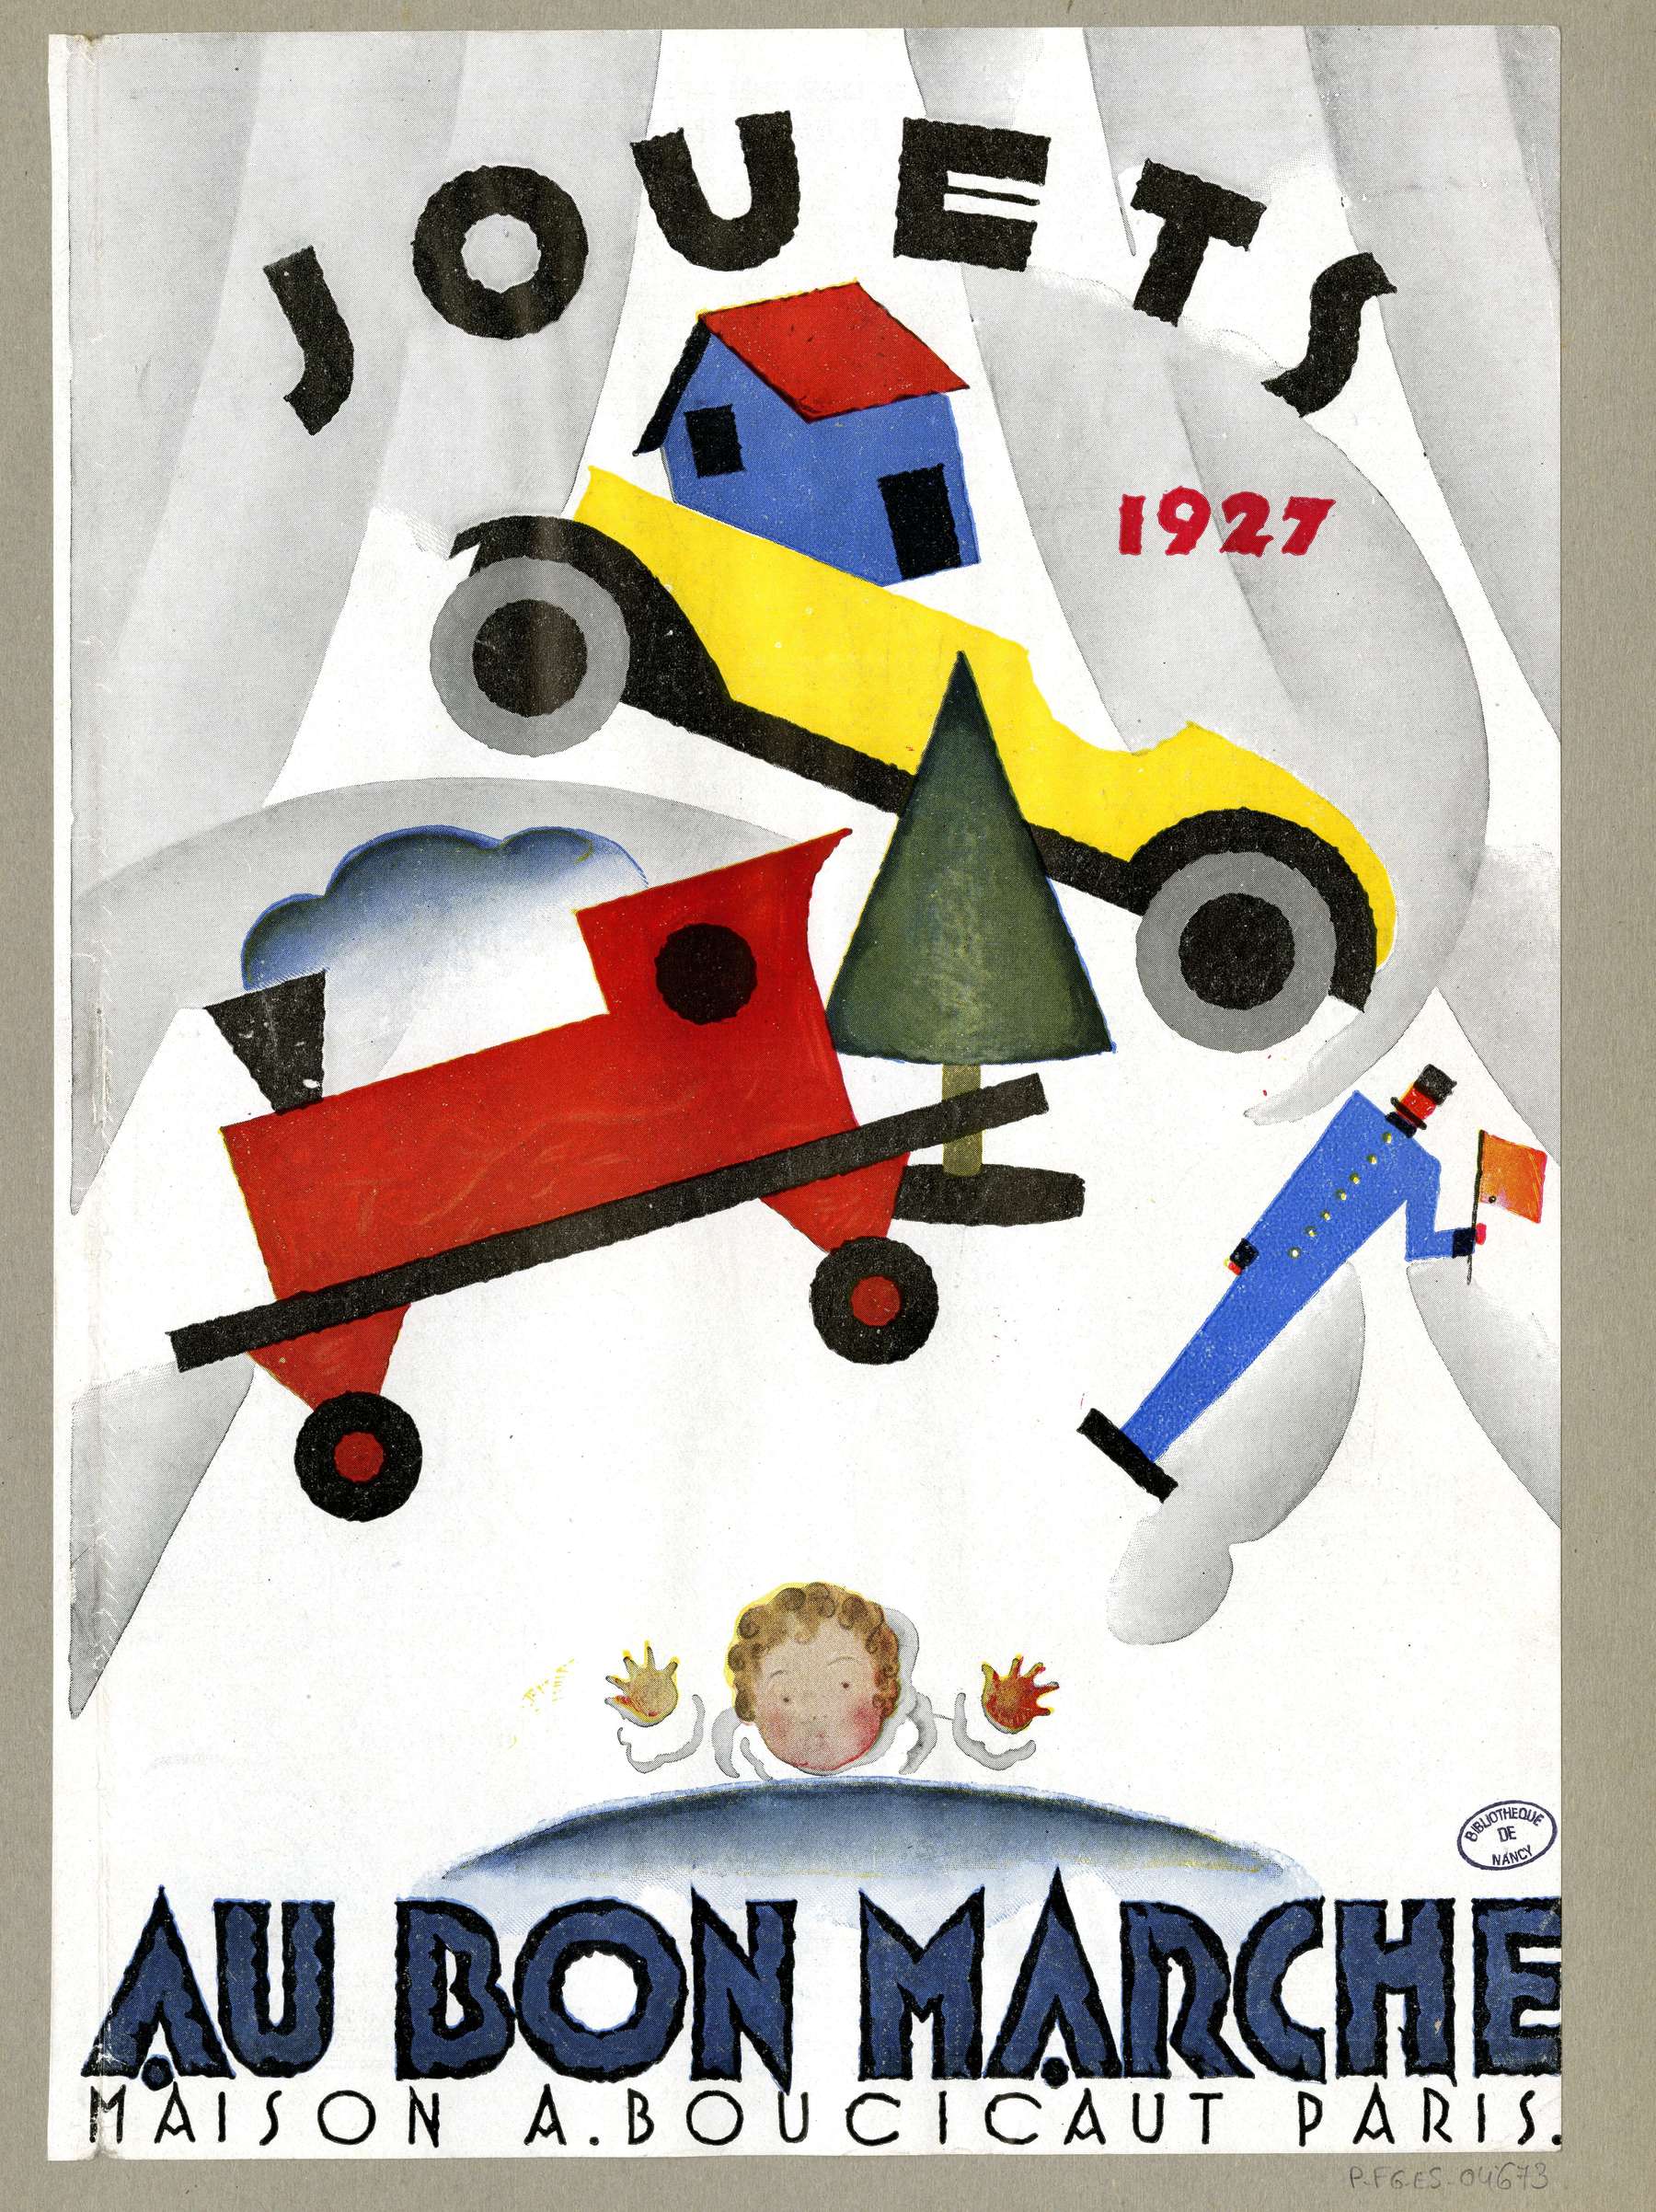 Contenu du "Au Bon Marché" Paris 1927